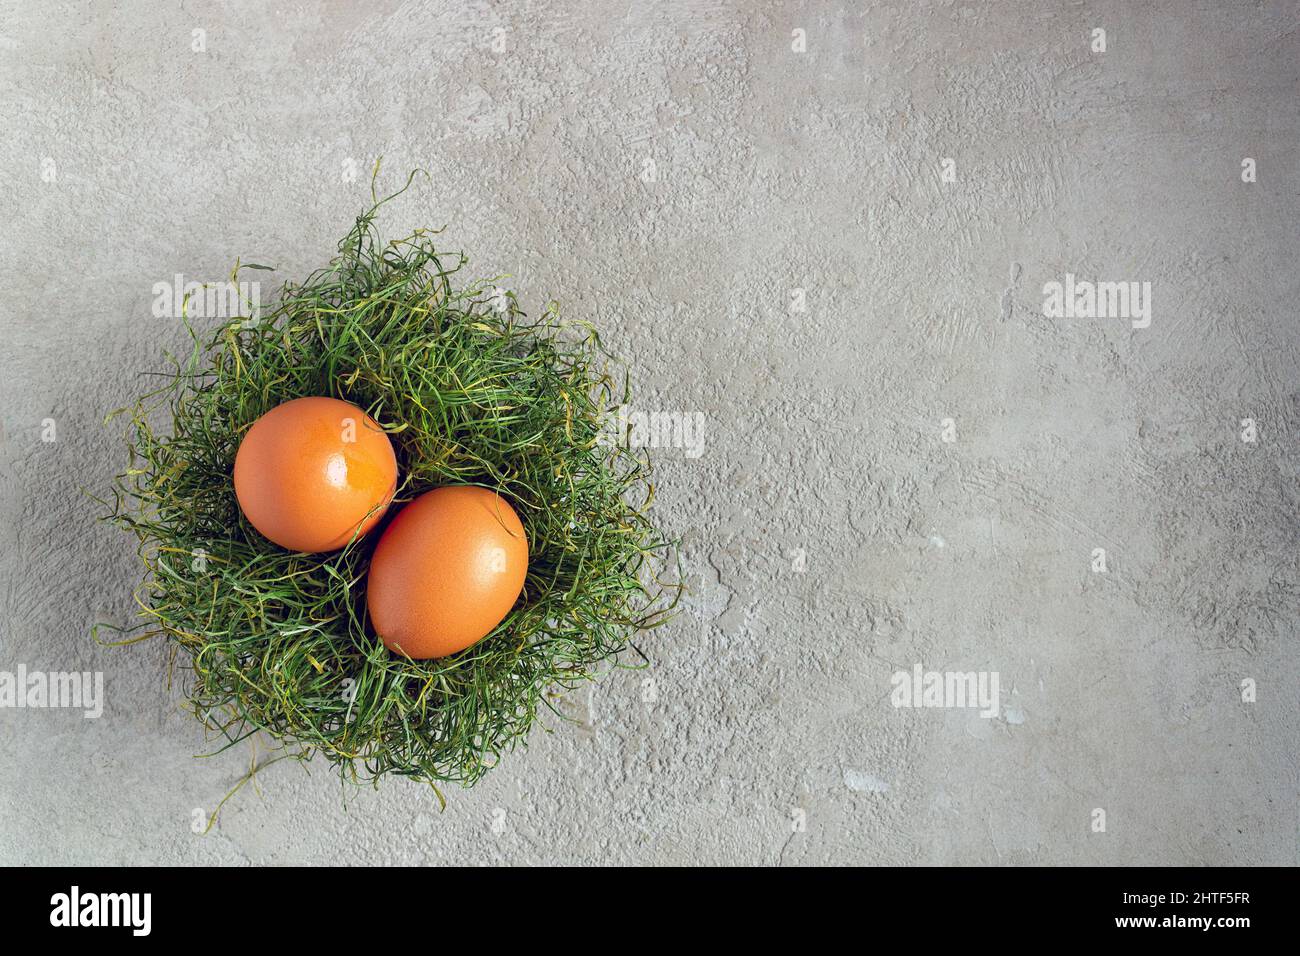 due uova di pollo giacciono in un nido su gesso grigio, spazio per il testo Foto Stock